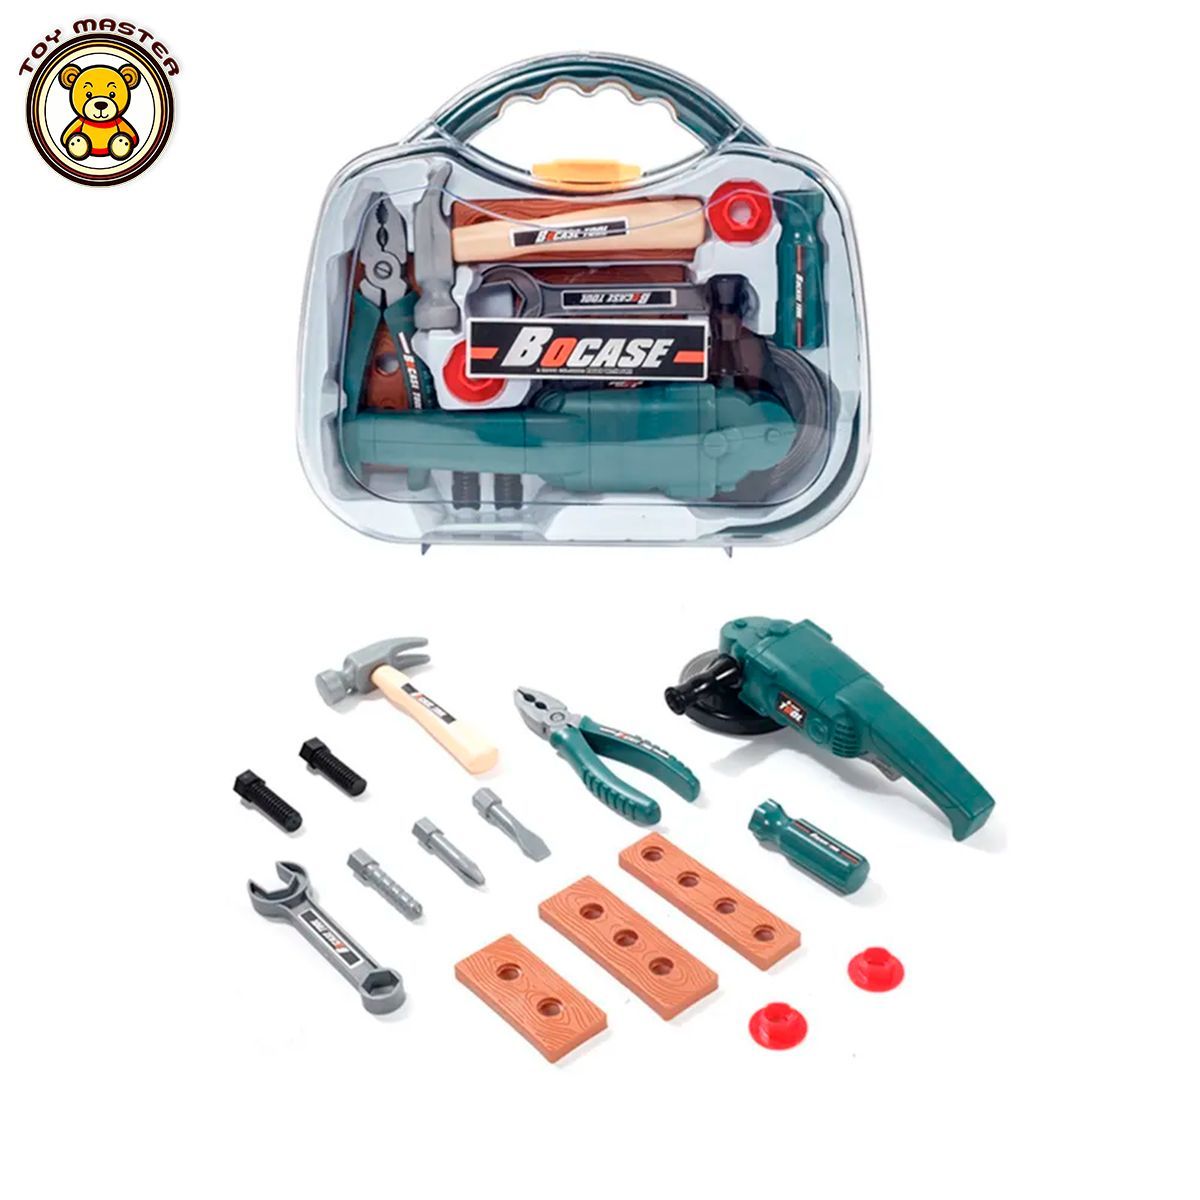 Игрушечный набор инструментов Tools с болгаркой в чемодане T5600C игрушечный шуруповерт 2 в 1 tools с разными насадками